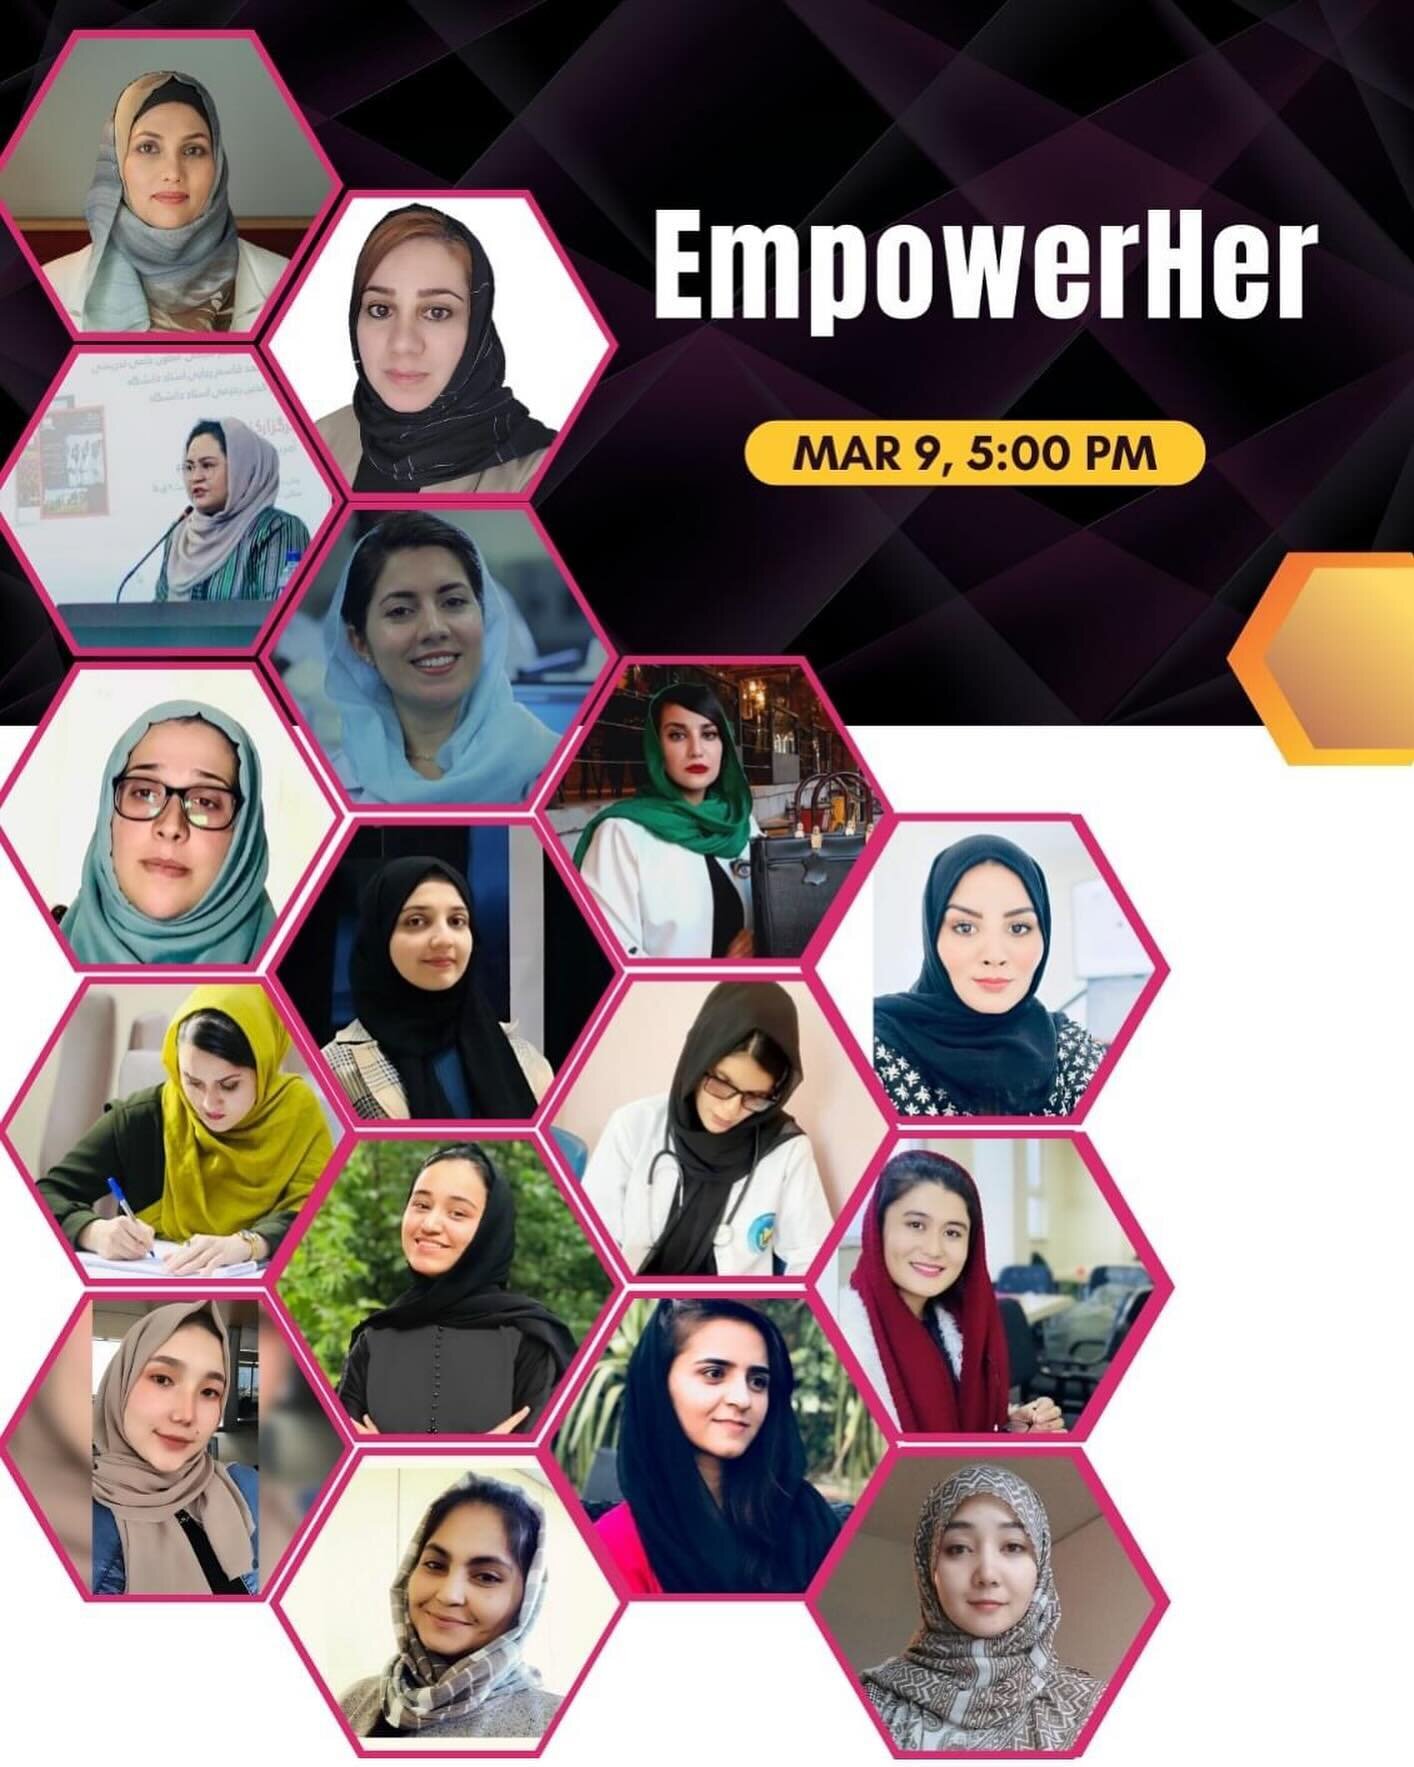 کنفرانس EmpowerHer 

در راستای گرامیداشت روز جهانی زن و مبارزه مستمر زنان افغان، کنفرانس EmpowerHer به عنوان نمادی از امید و همبستگی برگزار می&zwnj;شود🌟🌟🌟

این نشست مجازی با موضوع &ldquo;توانمندسازی از طریق آموزش&rdquo;، به همت سازمان&zwnj;های متع